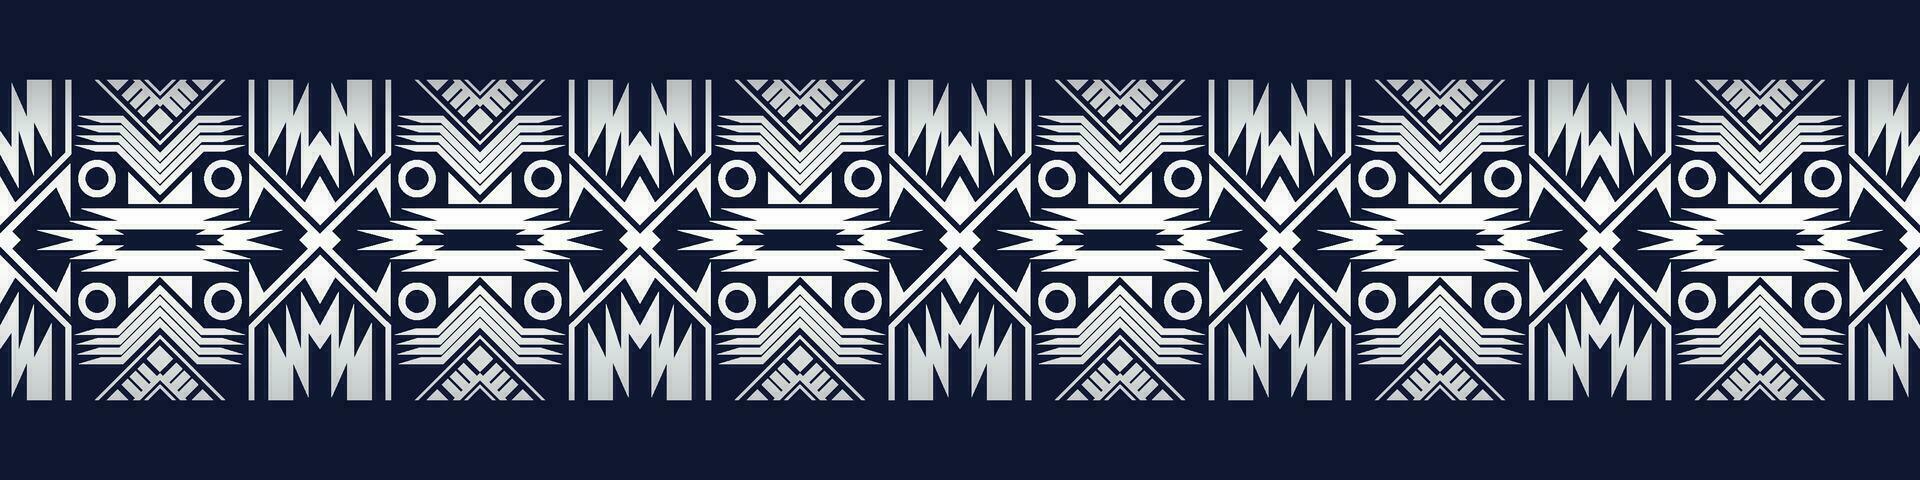 aztec gräns Marin blå bakgrund, stam- mönster vektor